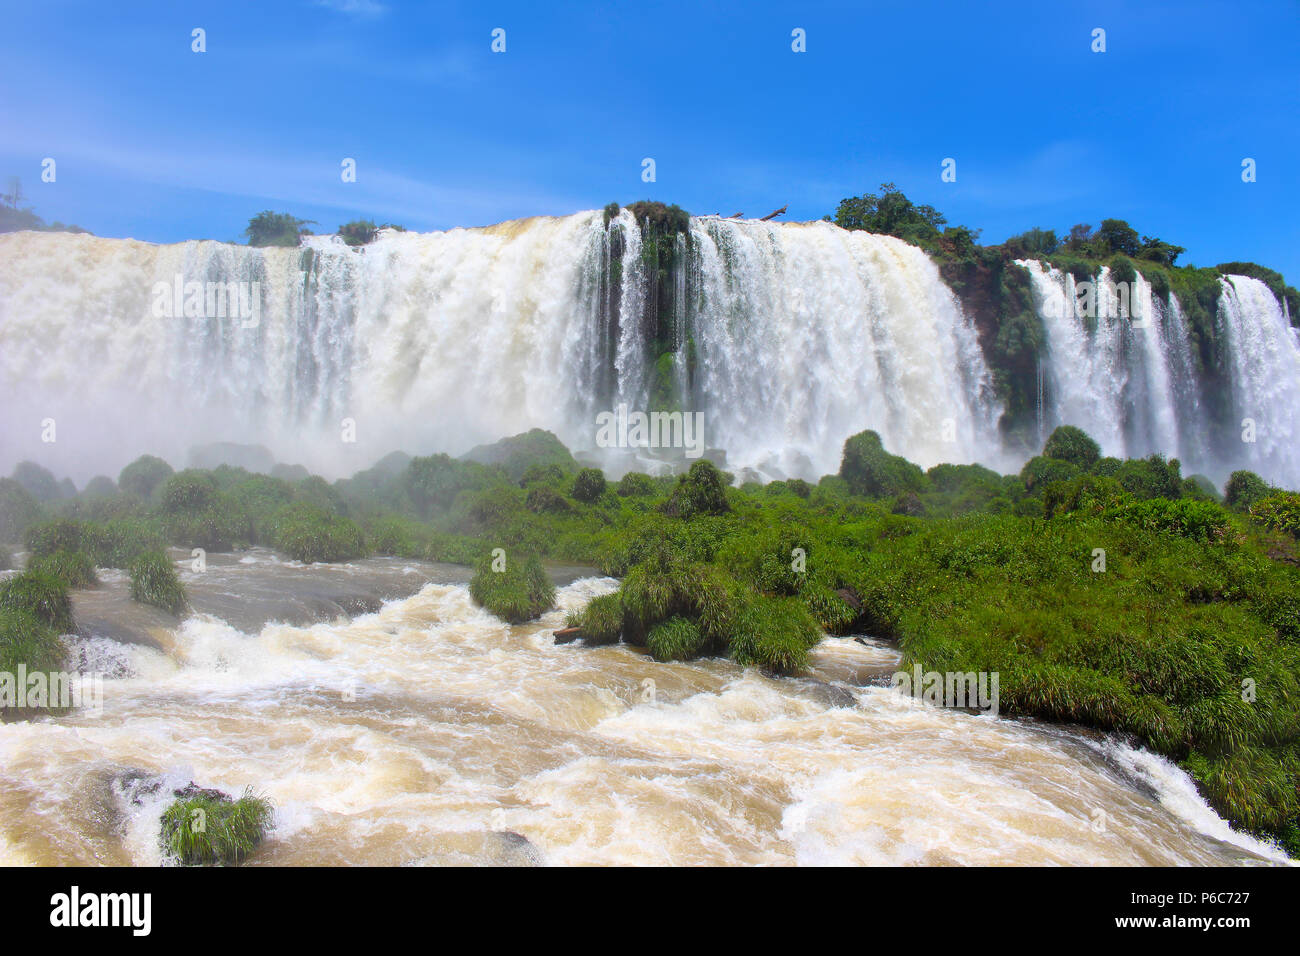 Cascate di Iguassù o Iguaçu Falls sono le cascate del fiume Iguazu sul confine argentino della provincia di Misiones e dello stato brasiliano di Paranà, Foto Stock